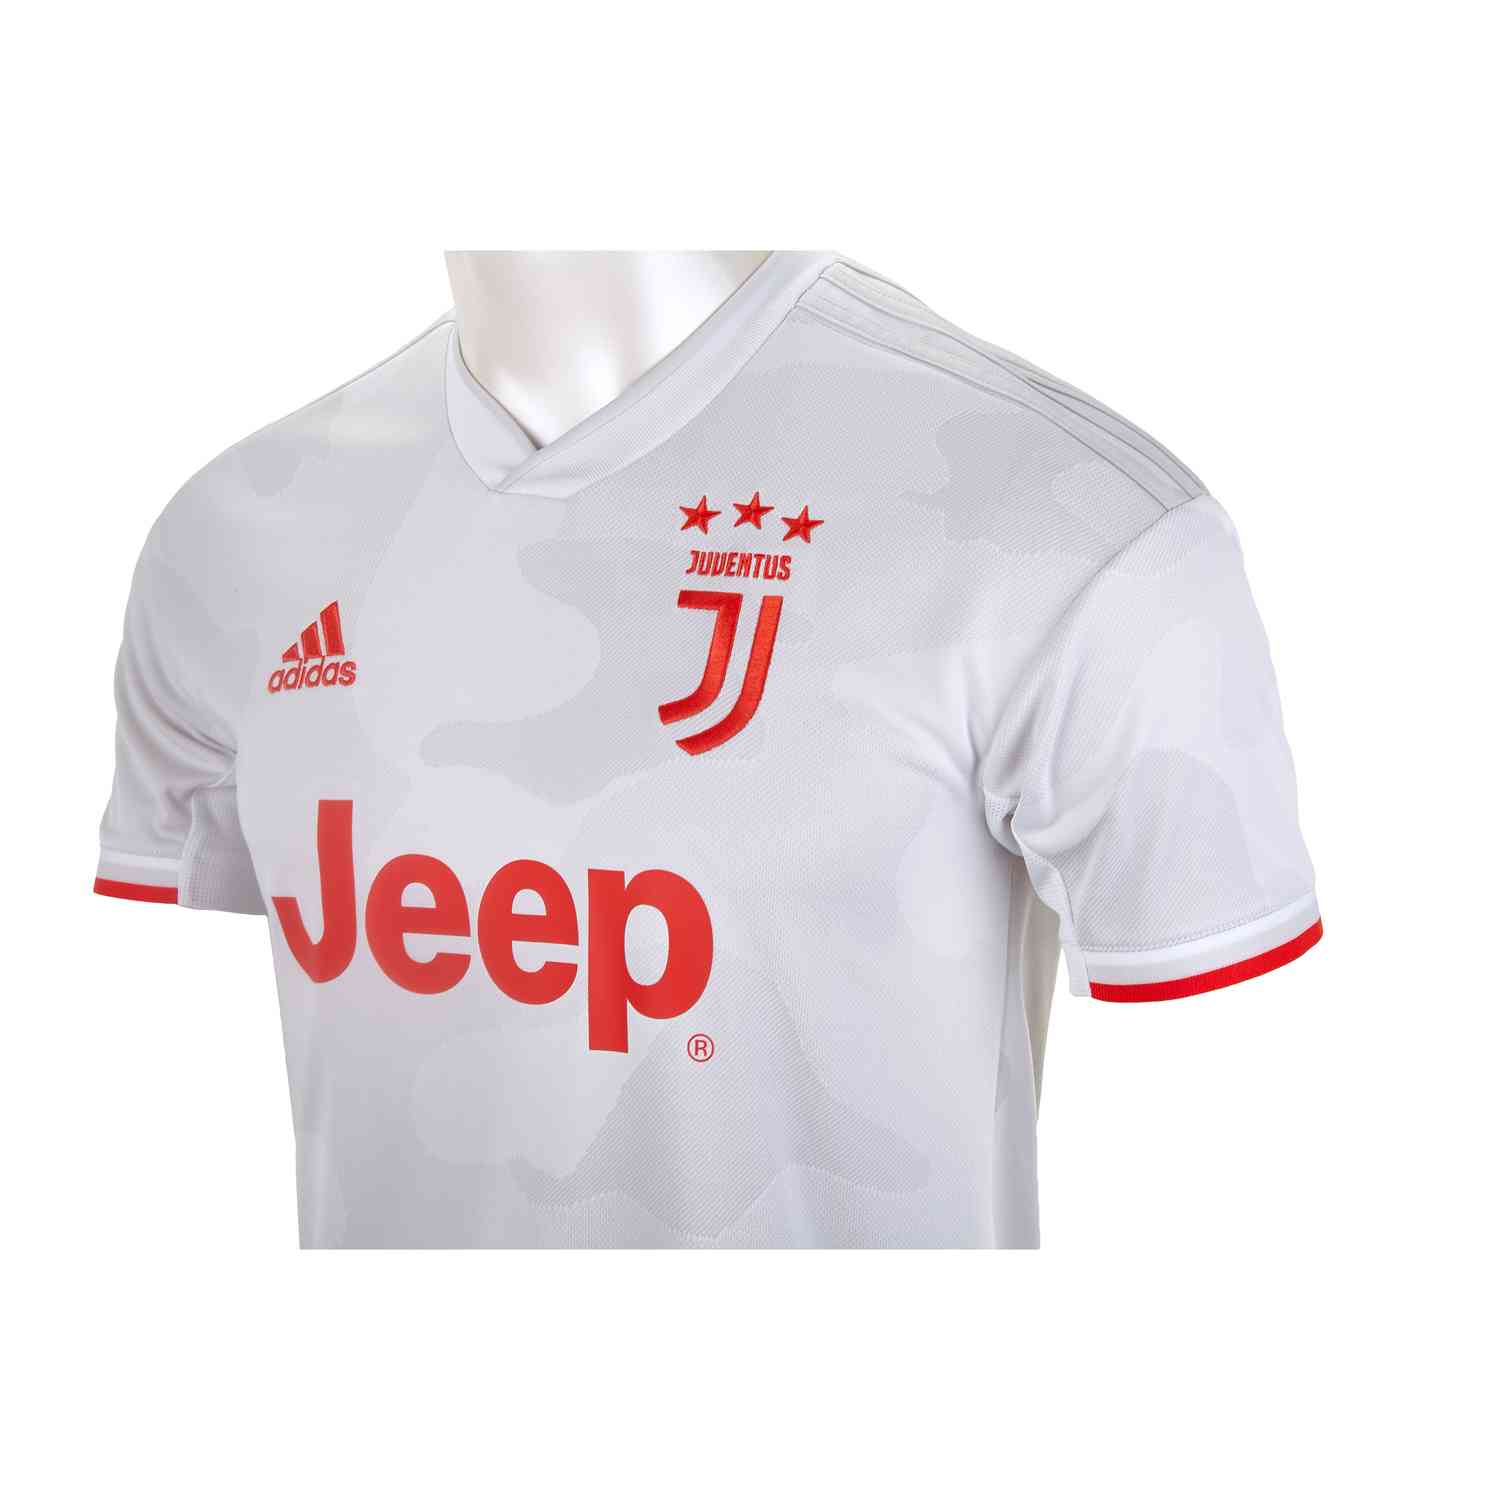 201920 Kids Adidas Juventus Away Jersey Soccerpro